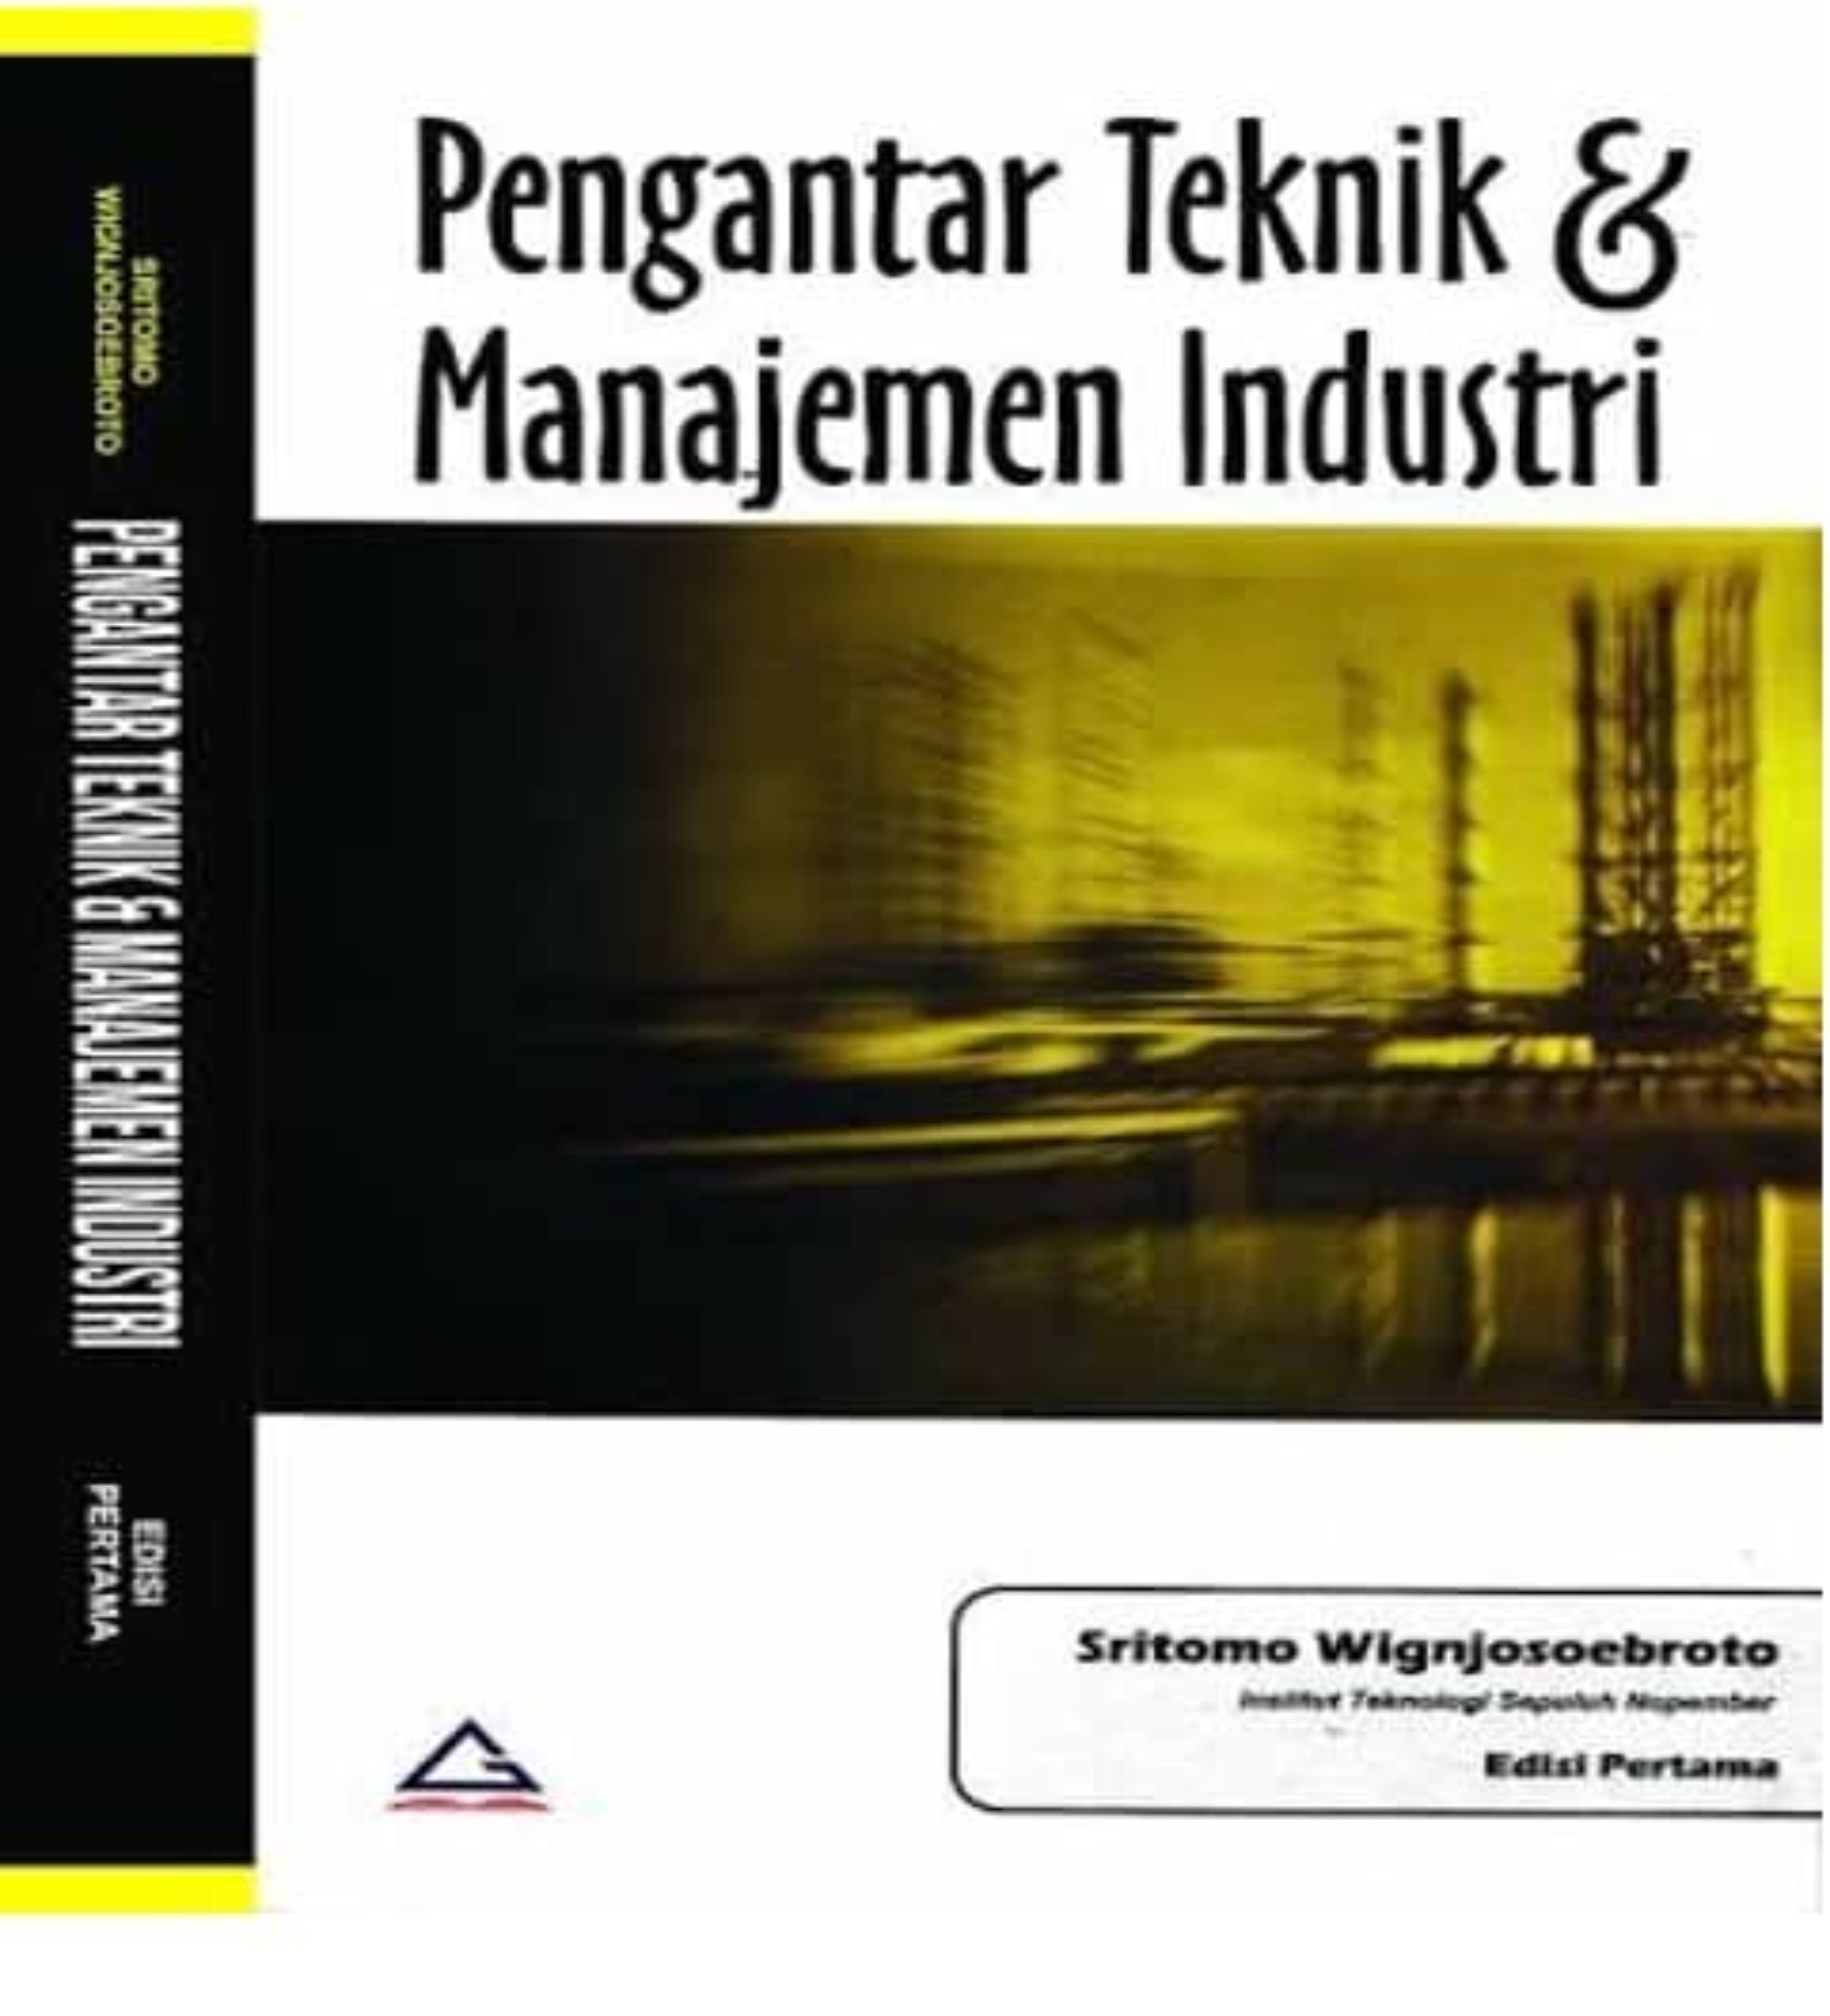 Pengantar Teknik & Manajemen Industri